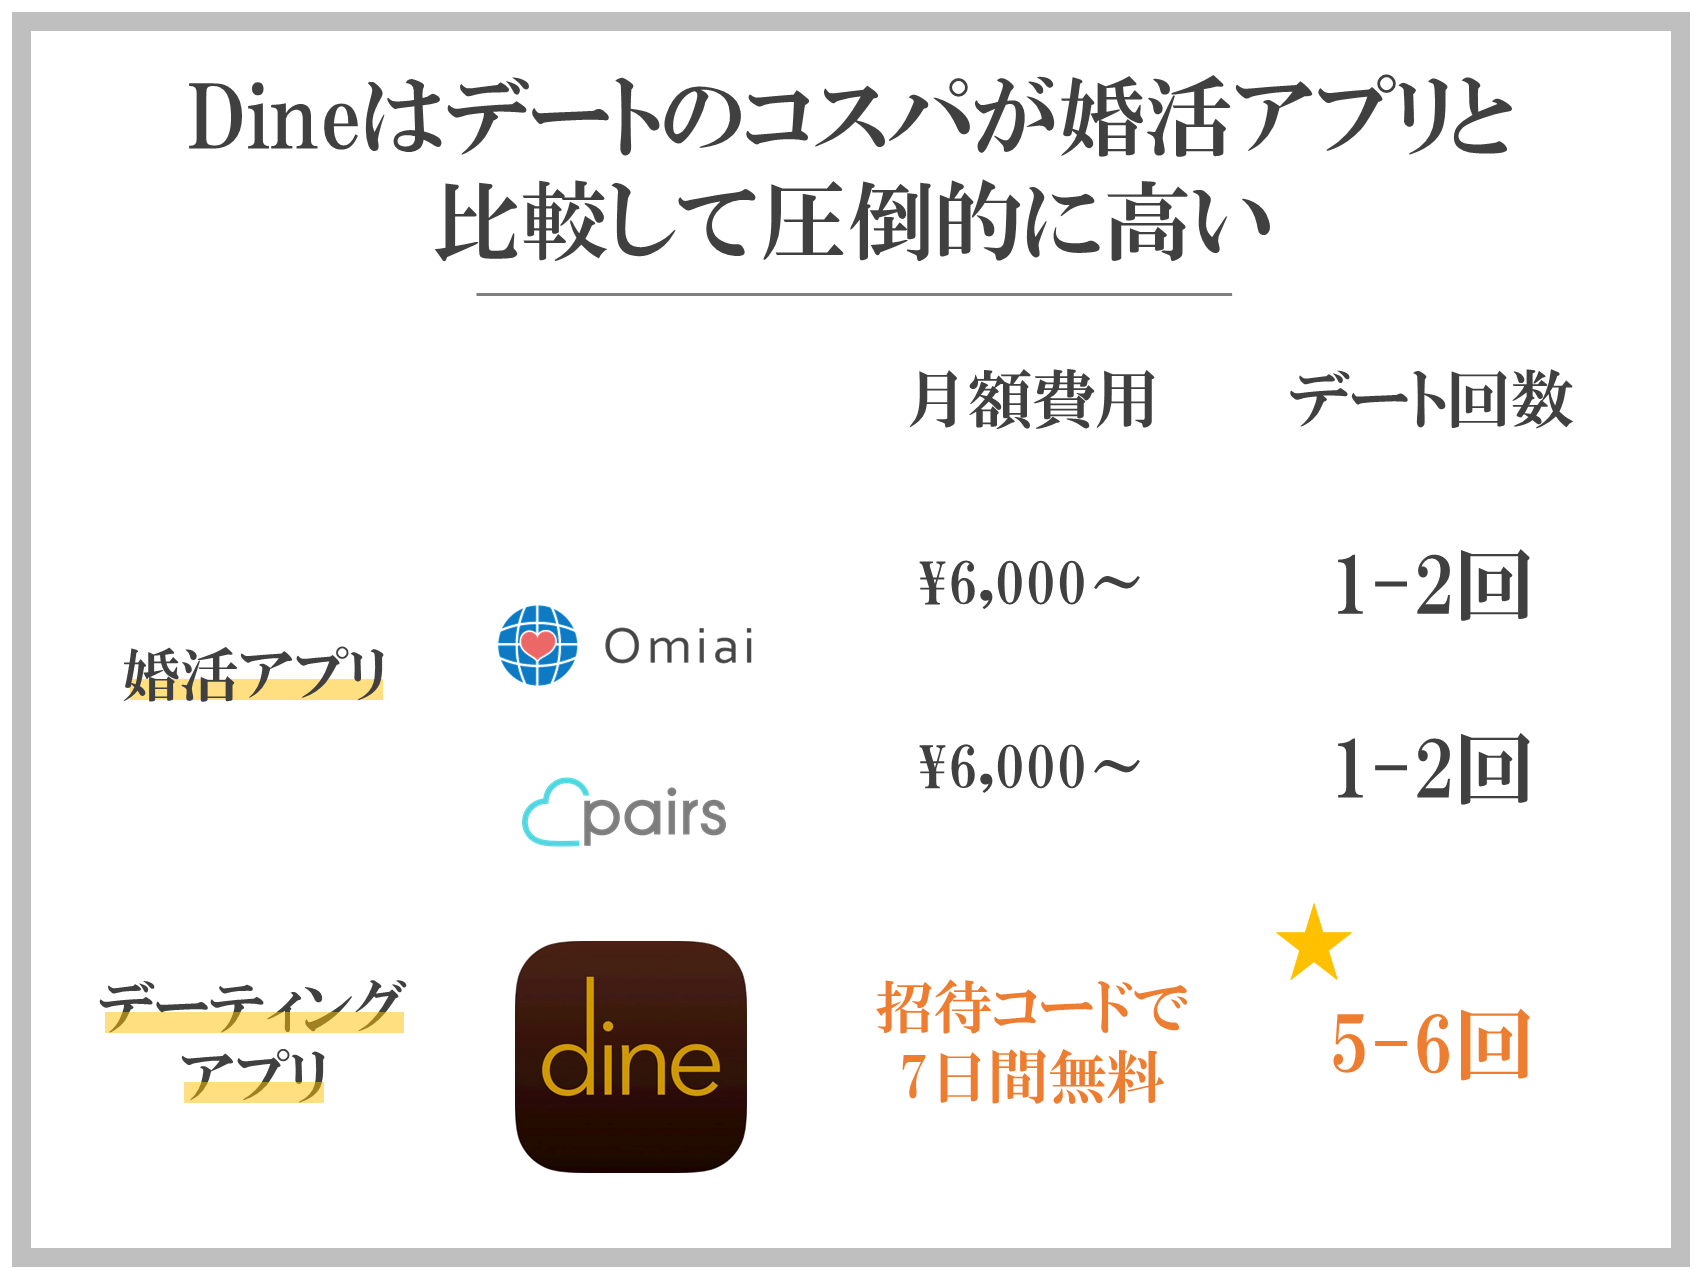 Dineはデートのコスパが婚活アプリと比較して圧倒的に高い